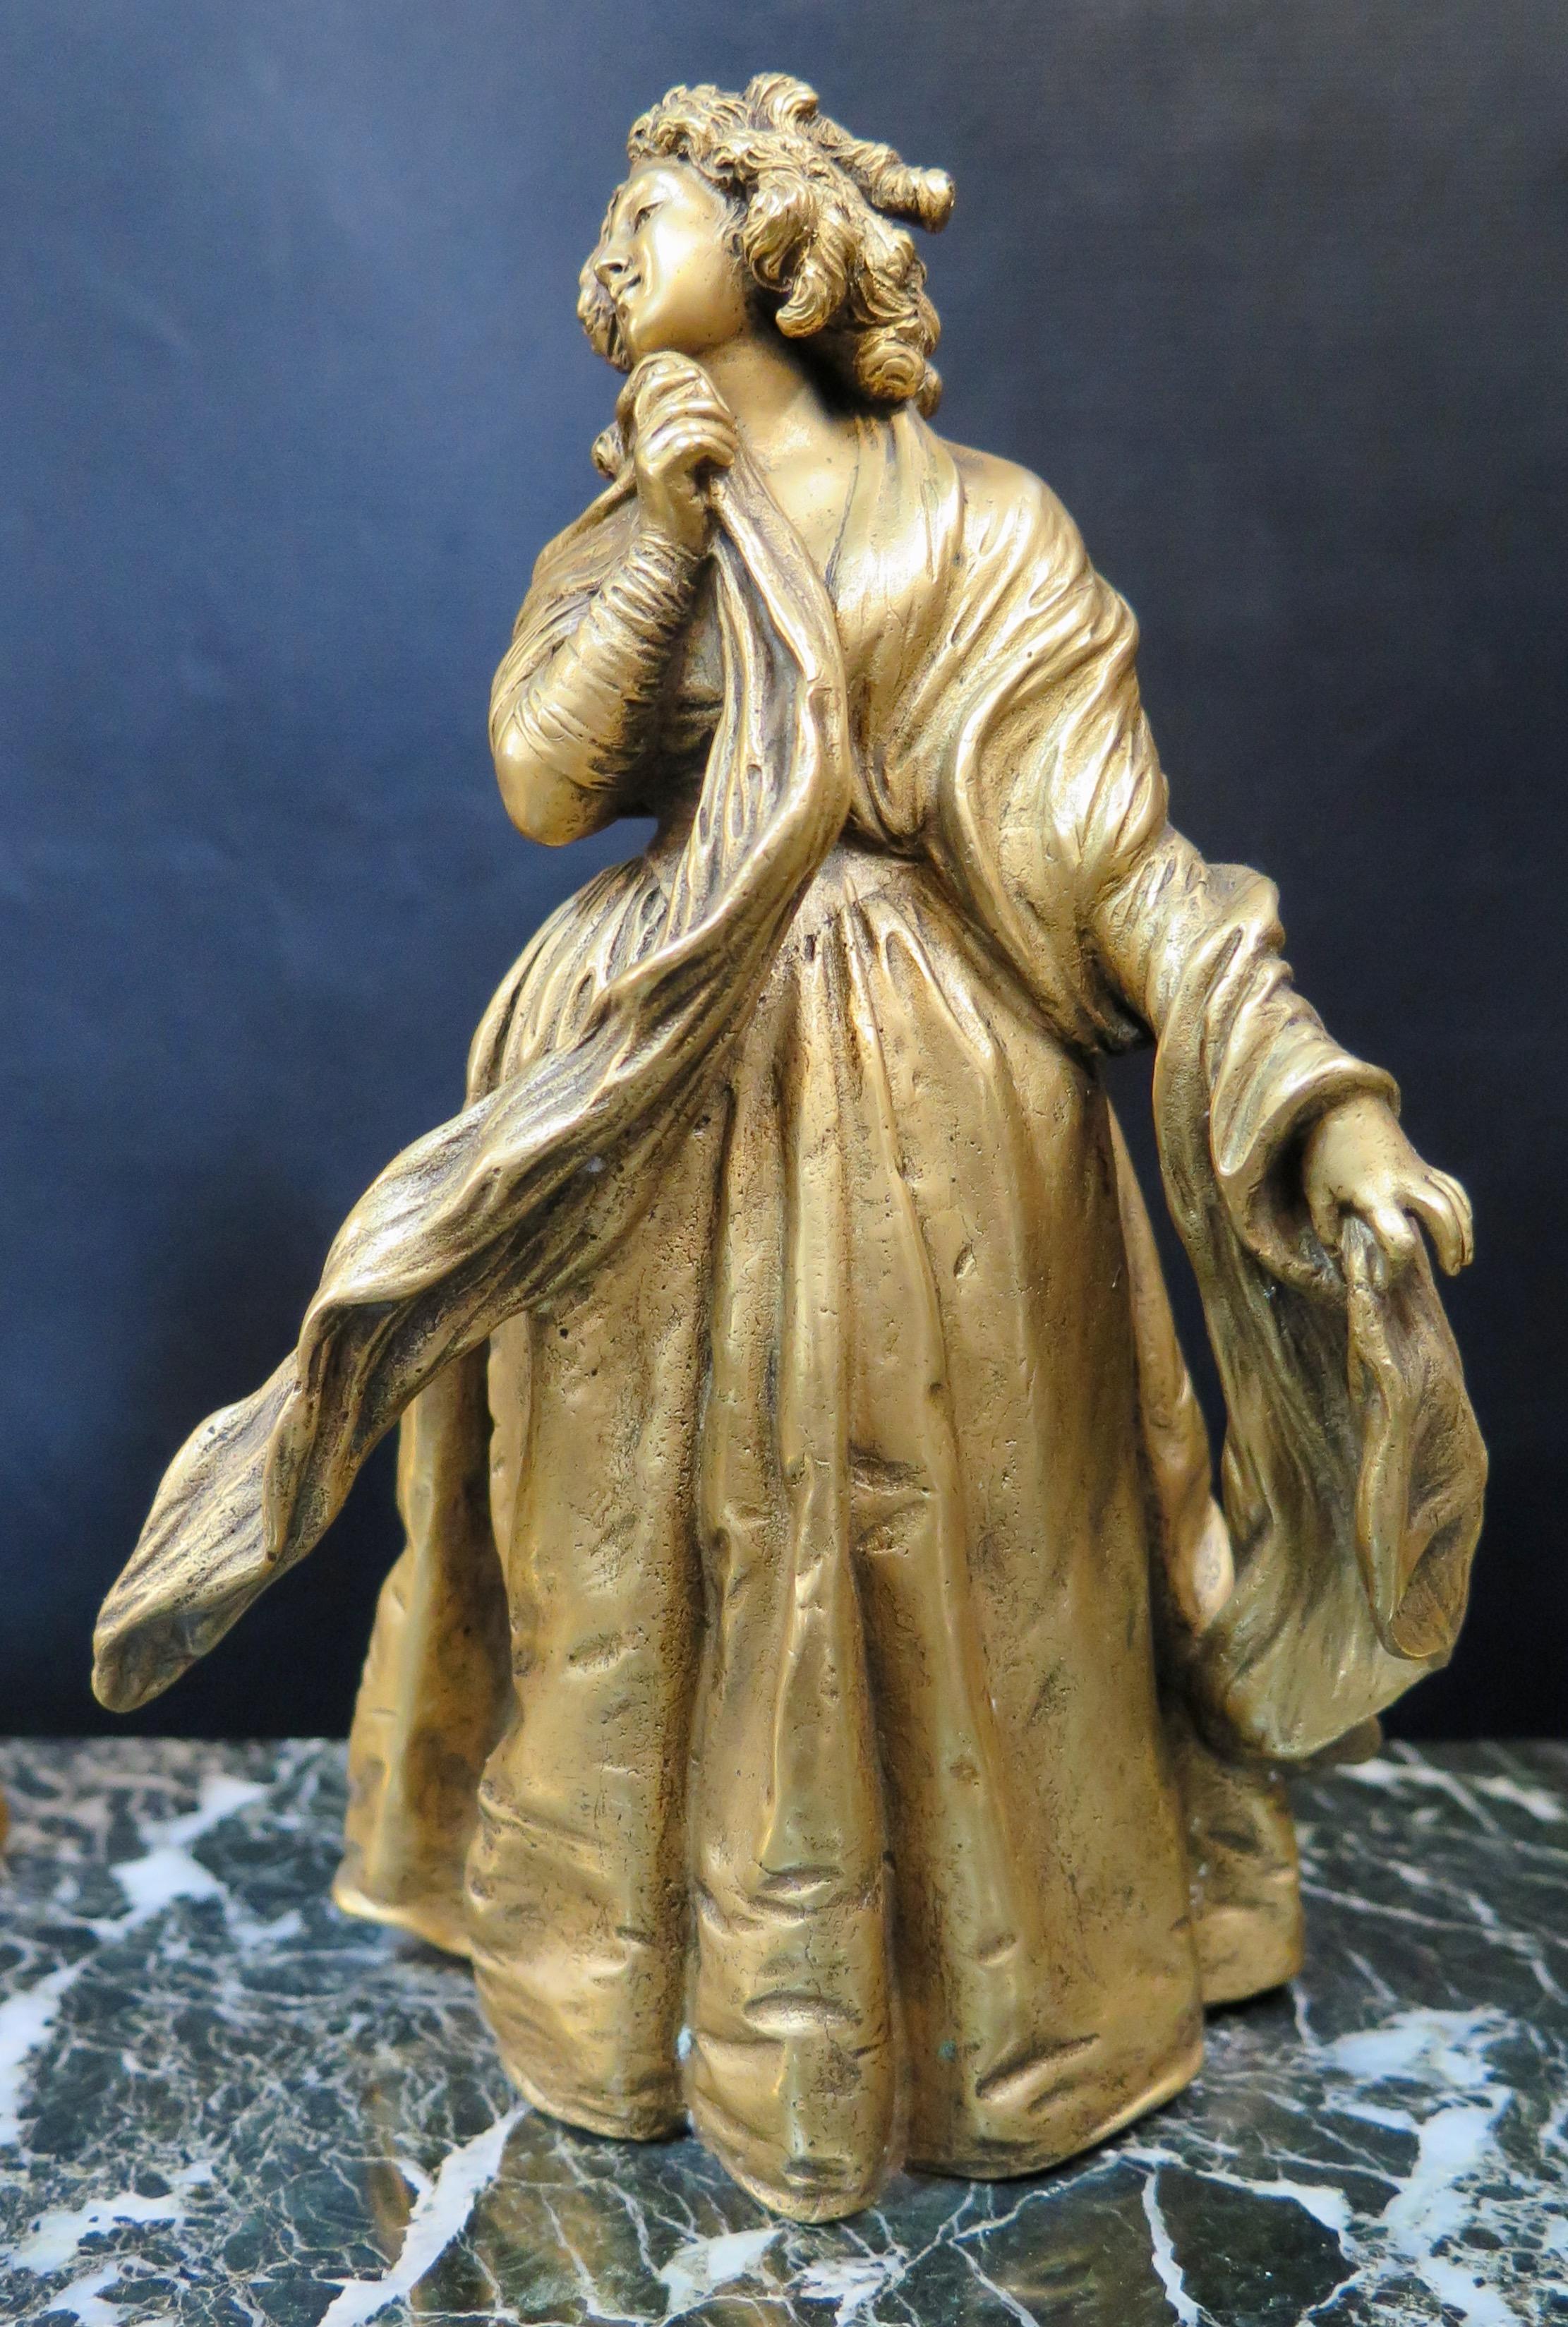 Cet encrier vintage du XIXe siècle est magnifiquement conçu avec un bronze doré sculpté détaillé rappelant la poétesse Elizabeth Barrett Browning. Le personnage est vêtu d'une robe drapée et tient autour de lui un long châle fluide. Deux encriers